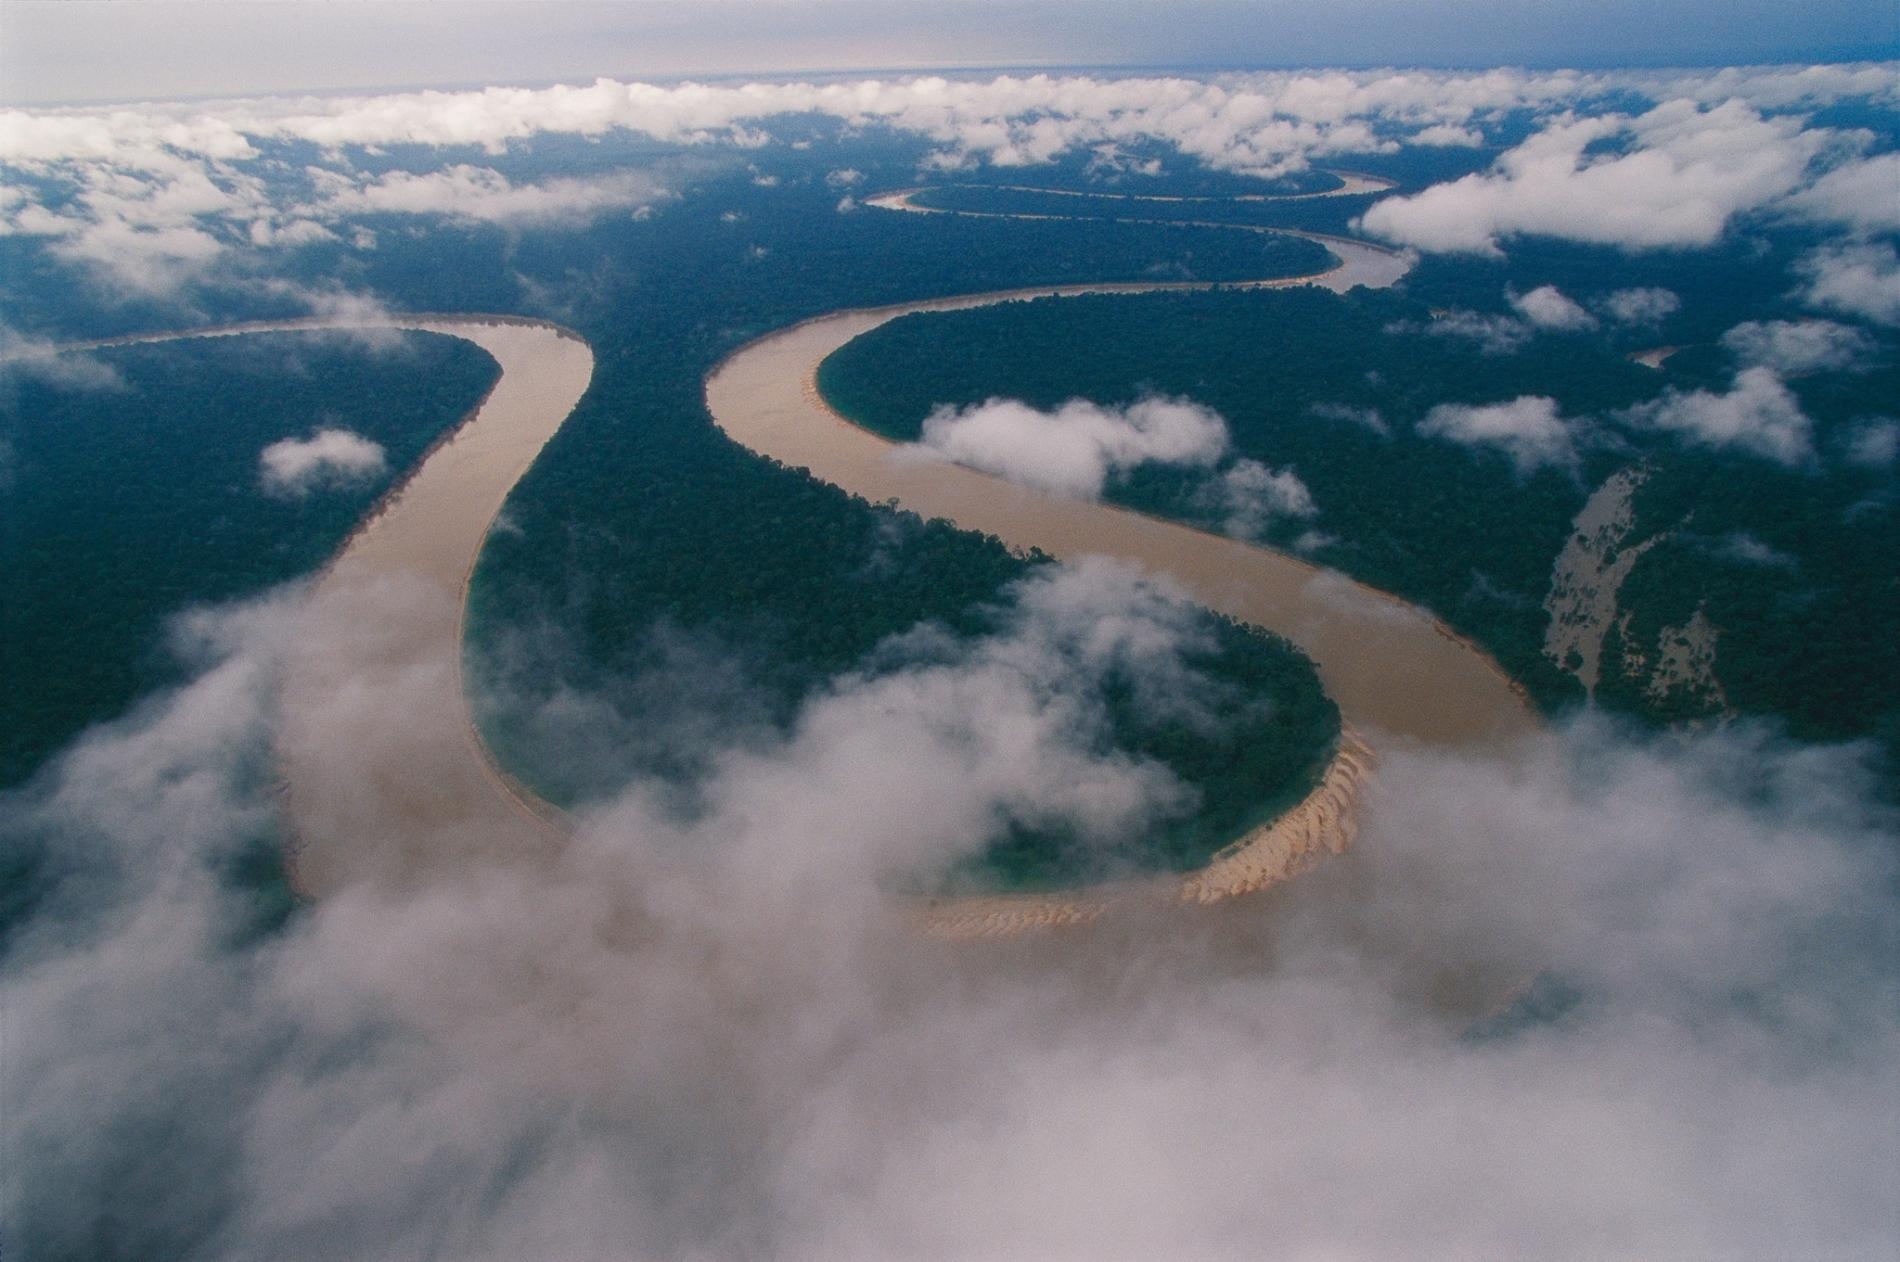 伊塔瓜伊河（Itaquaí River）蜿蜒穿過巴西最西邊的亞馬遜地區，深入查瓦利溪谷原住民保留區（Javari Valley Indigenous Territory）；在這個廣大的保留區內，有著全球最遺世獨立的未接觸部落。醫療專家和人權倡議團體擔心，假如新型冠狀病毒傳播到這些原住民部落中，可能會發生滅族慘劇。他們呼籲巴西政府採取緊急應變行動保護這些脆弱的部落，不要讓外人進入原住民領域。PHOTOGRAPH BY NICOLAS REYNARD, NAT GEO IMAGE COLLECTION 